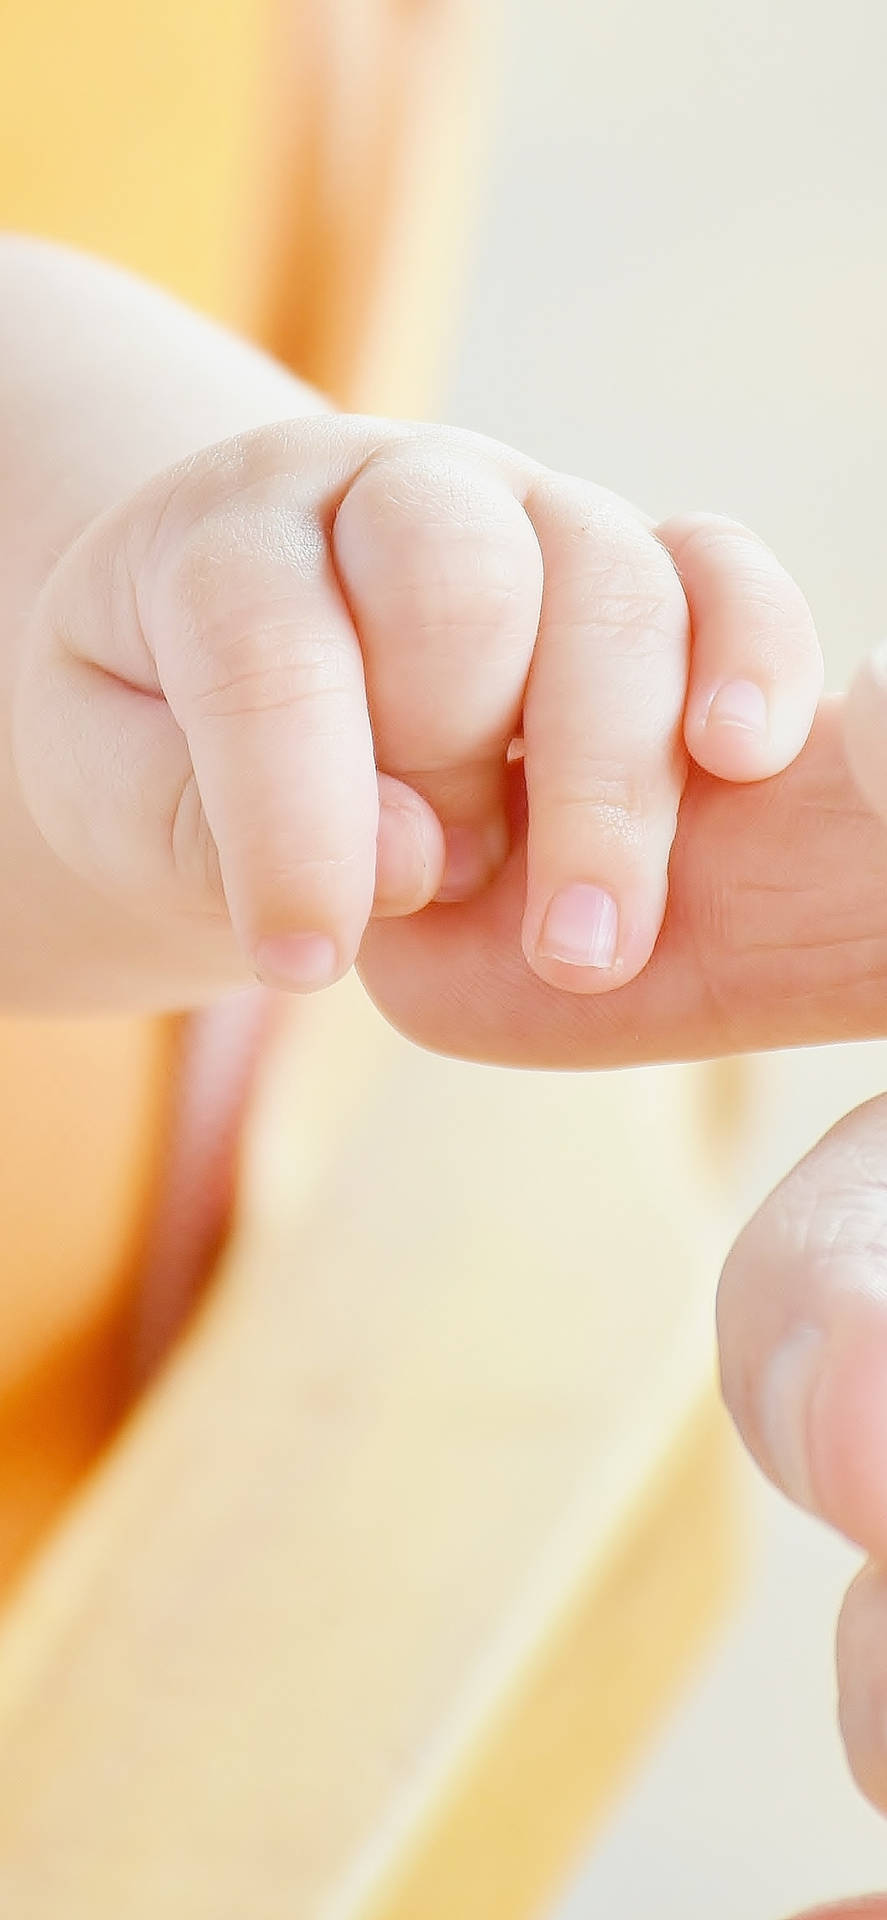 Babyhandleker Med Ett Finger Som Bakgrundsbild På Datorn Eller Mobiltelefonen. Wallpaper